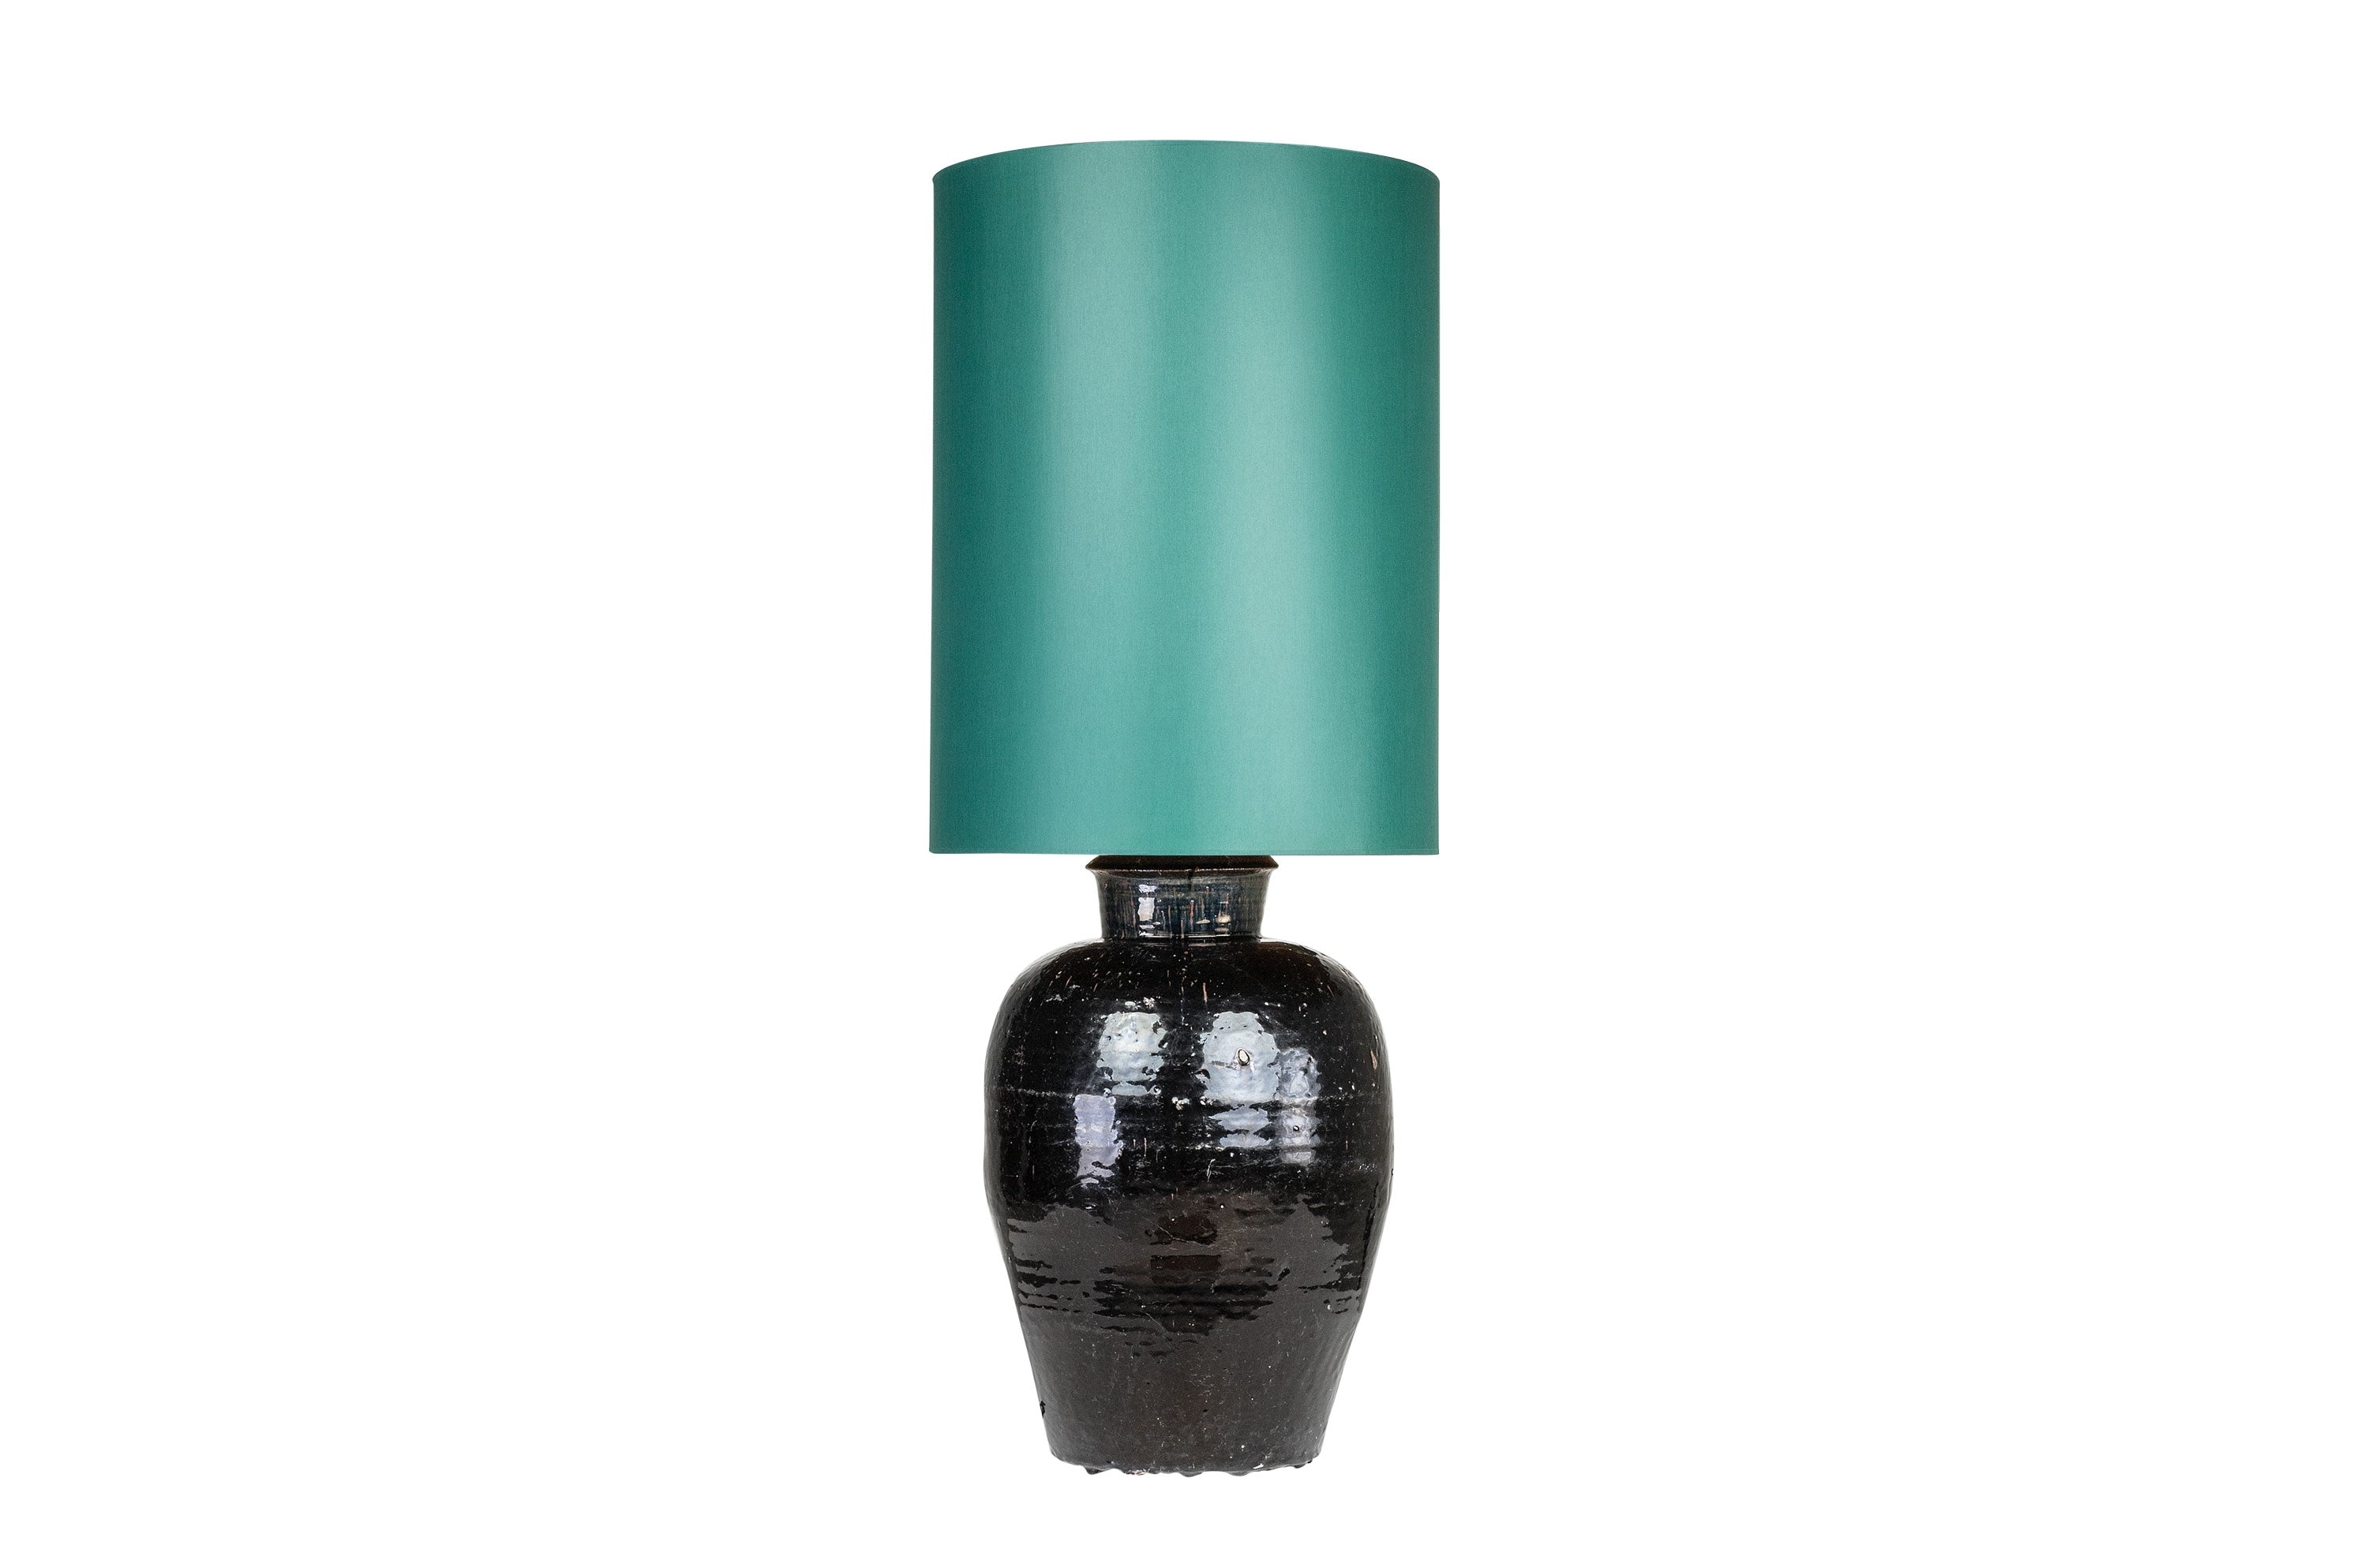 Tafellamp Antique Urn - M - Groen